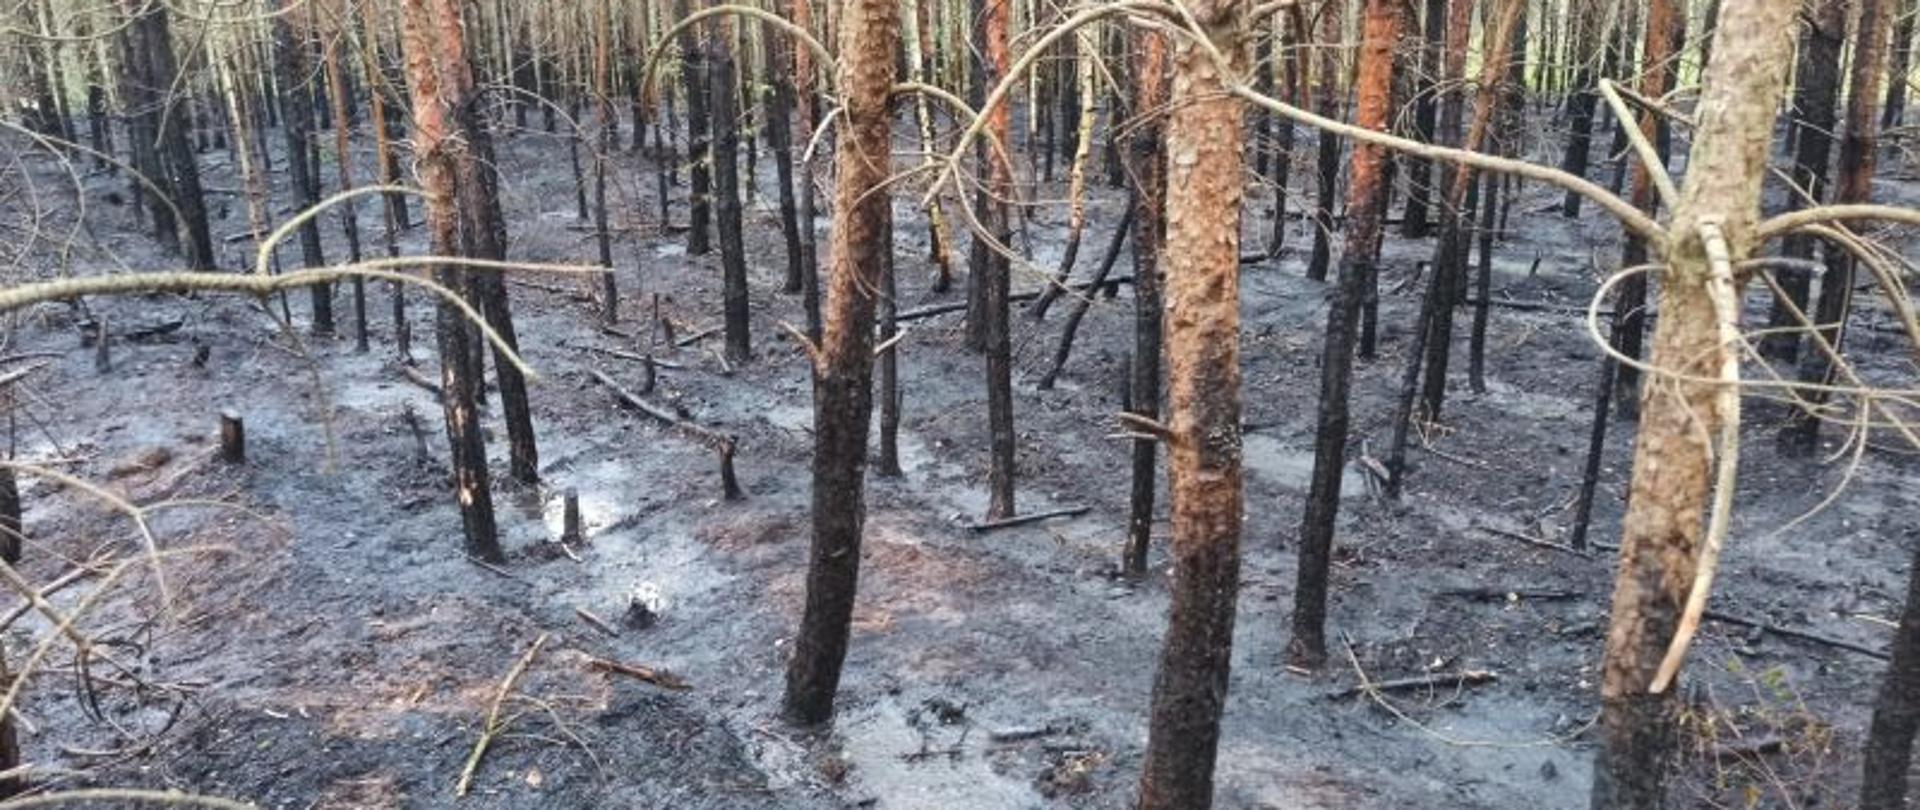 Widok na całkowicie spalone podszycie. Dodatkowo nadpaleniu uległa podstawa drzew. Wszystko zwęglone i spalone.